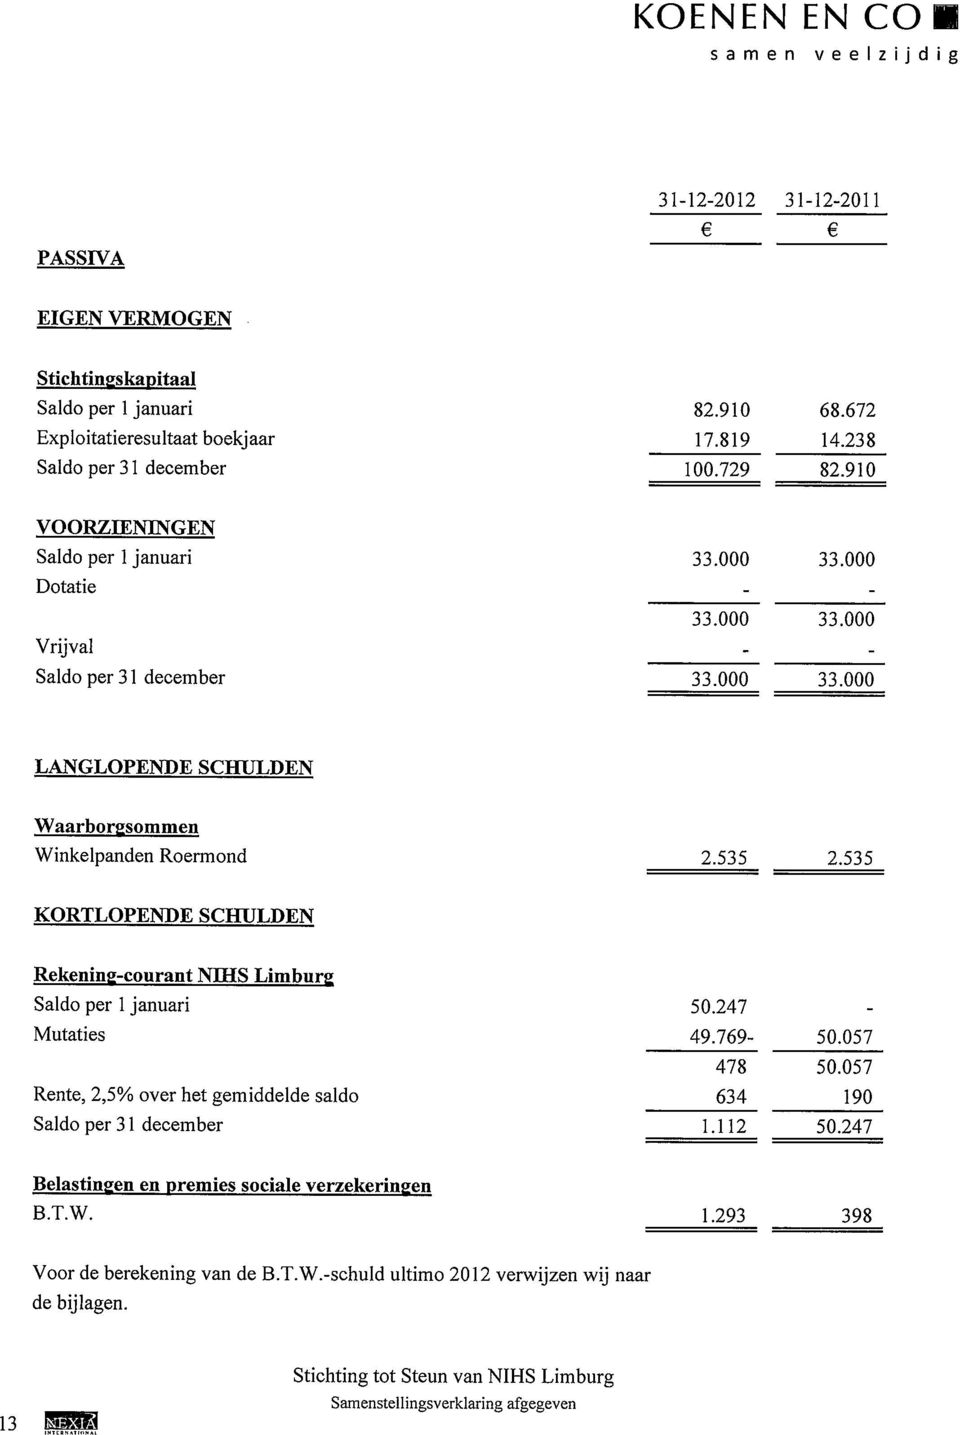 535 2.535 KORTLOPENDE SCHULDEN Rekening-courant NIHS Limburg Saldo per 1 januari Mutaties Rente, 2,5% over het gemiddelde saldo Saldo per 31 december 50.247 49.769-478 634 1.112 50.057 50.